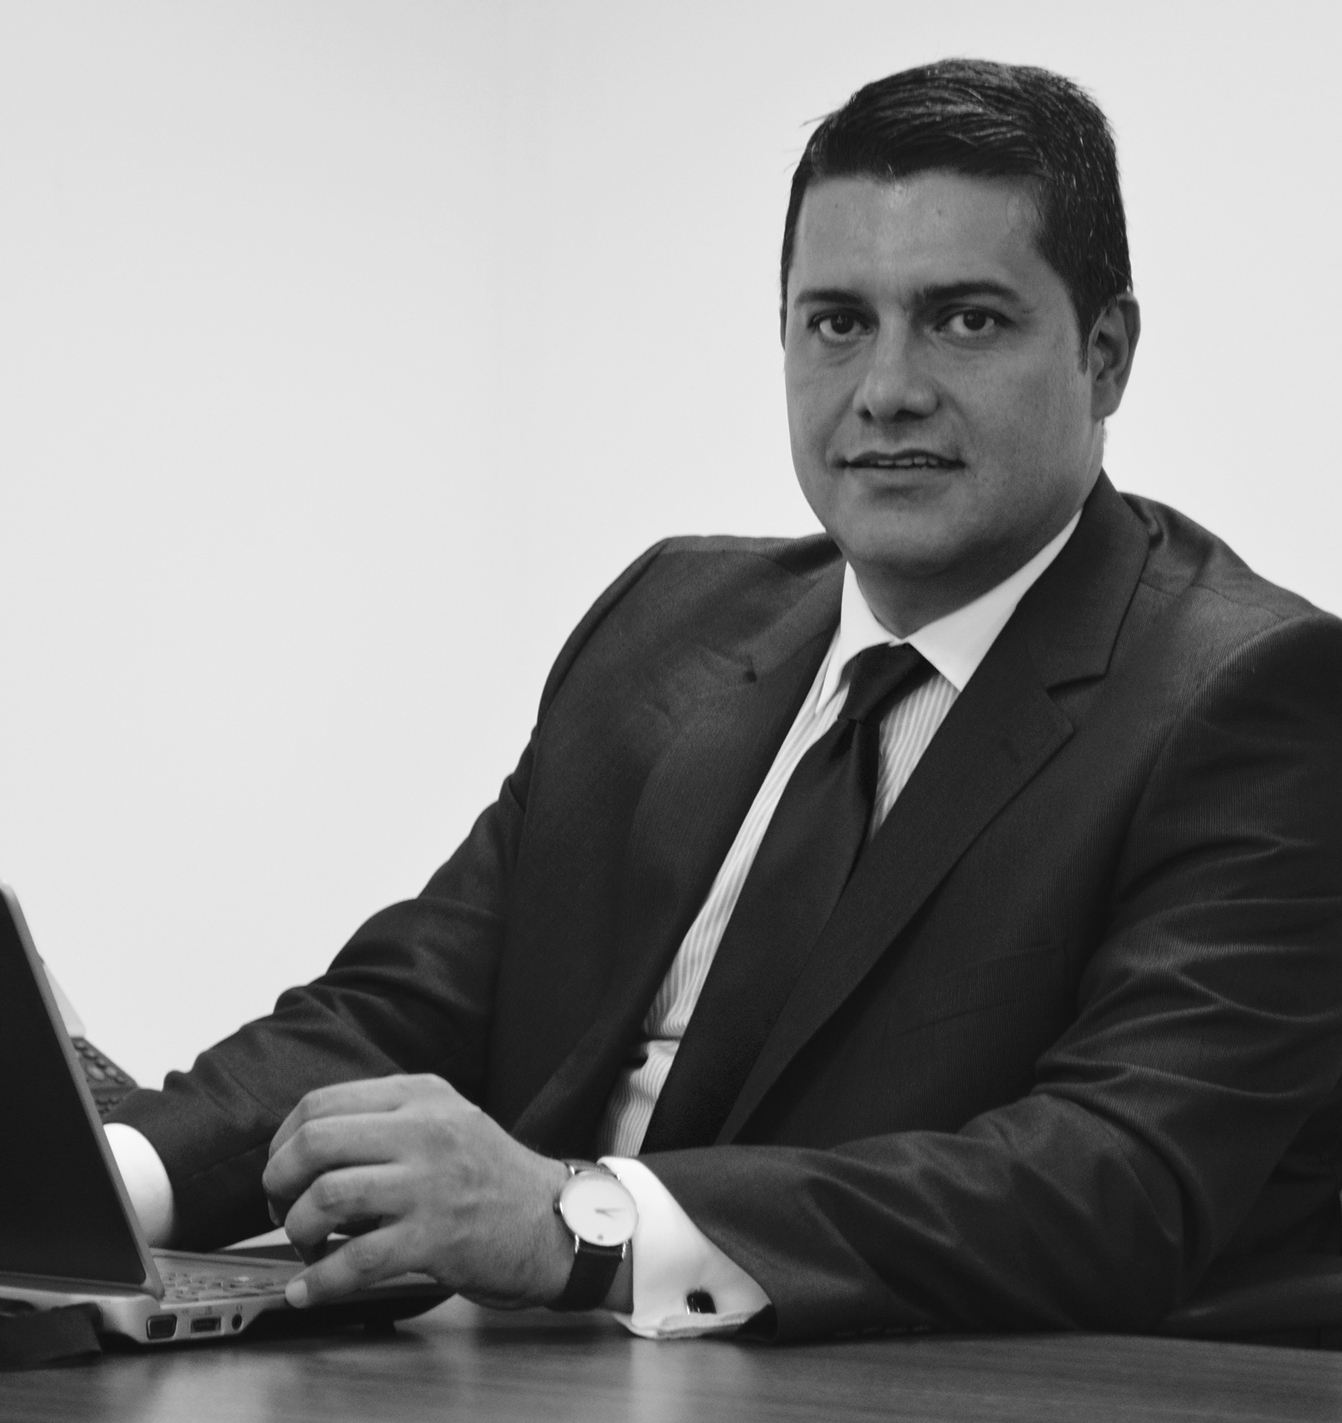 Imagen principal de la noticia Exconsejero Gabriel Gaitán León, elegido como nuevo miembro del SMEIG, organismo asesor del IASB, entidad internacional emisora de las NIIF.